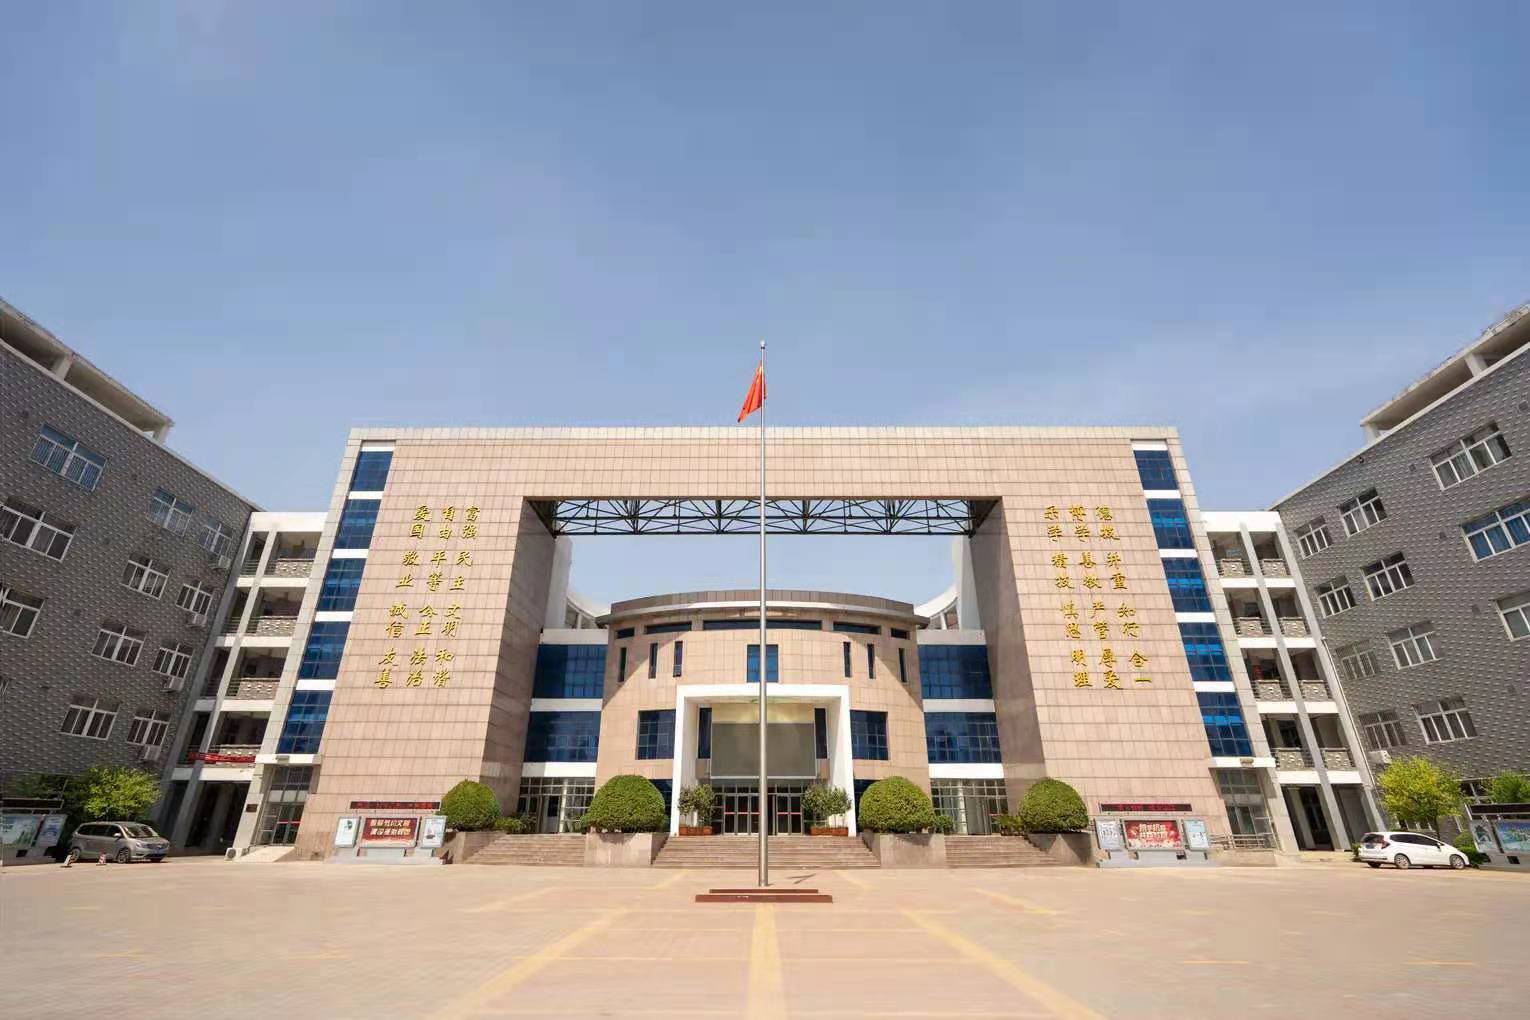 有航空专业的排名前三的河南新闻学校具体位置